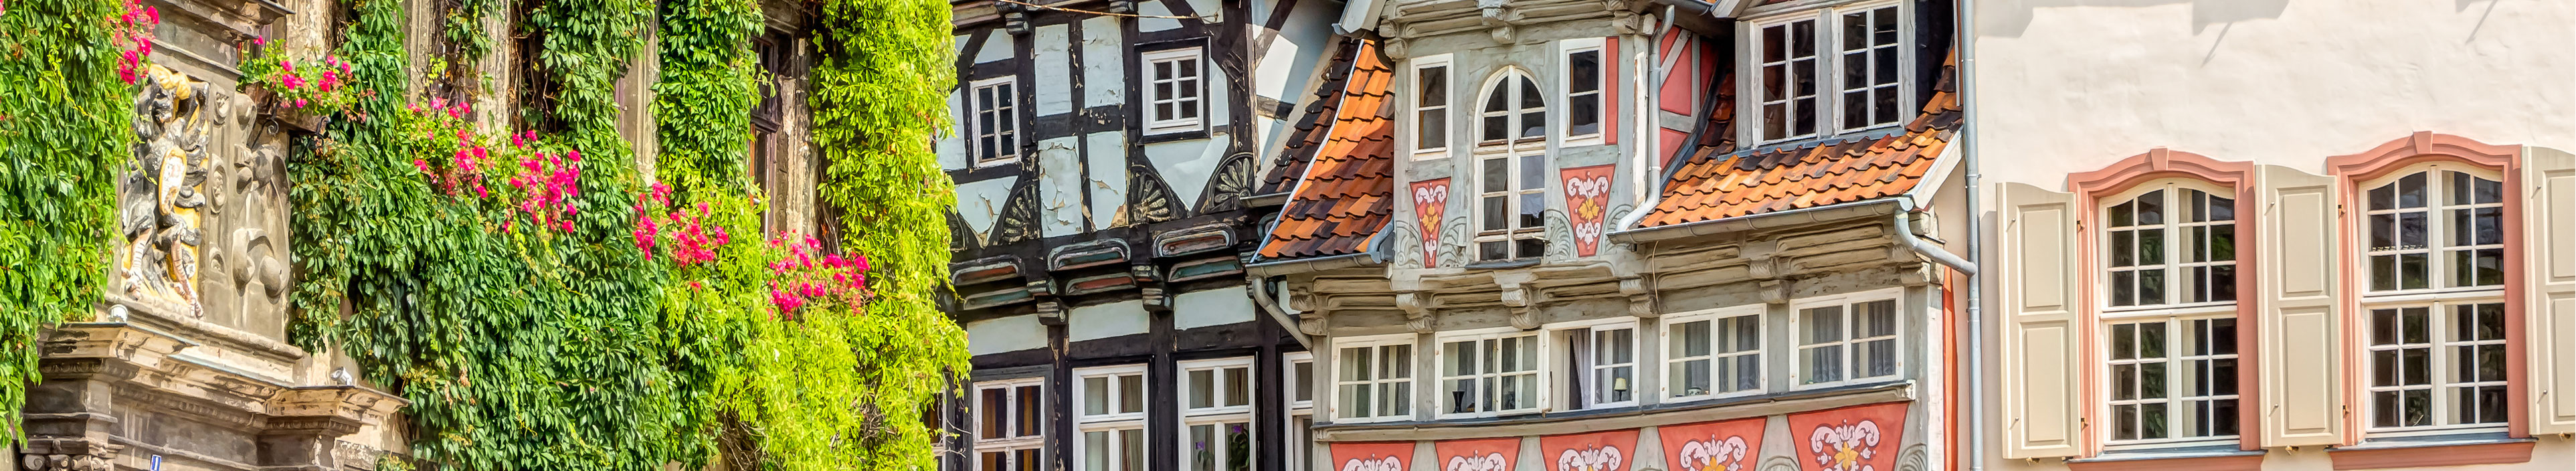 Alte, traditionelle Fachwerkhäuser in der Welterbestadt Quedlinburg im Harz, Markt und und Gebäude der Stadtverwaltung